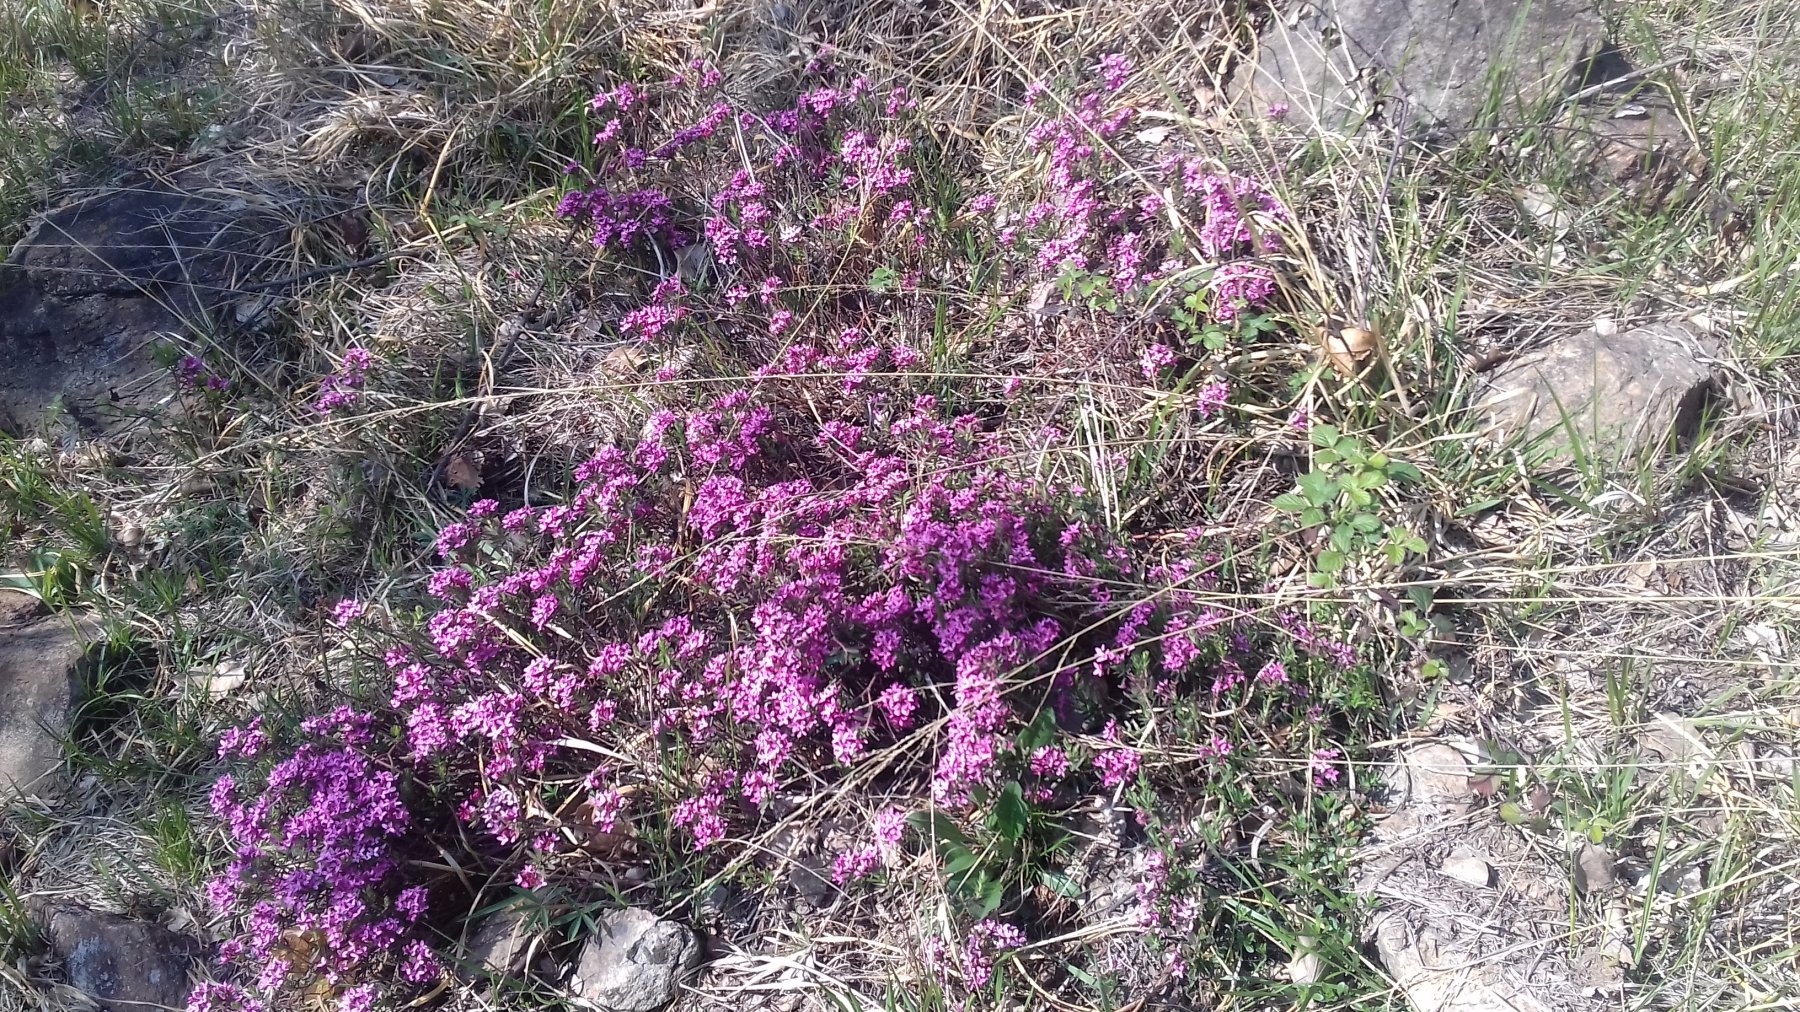 Bella e profumata fioritura di Dafne odorosa su gran parte del percorso.